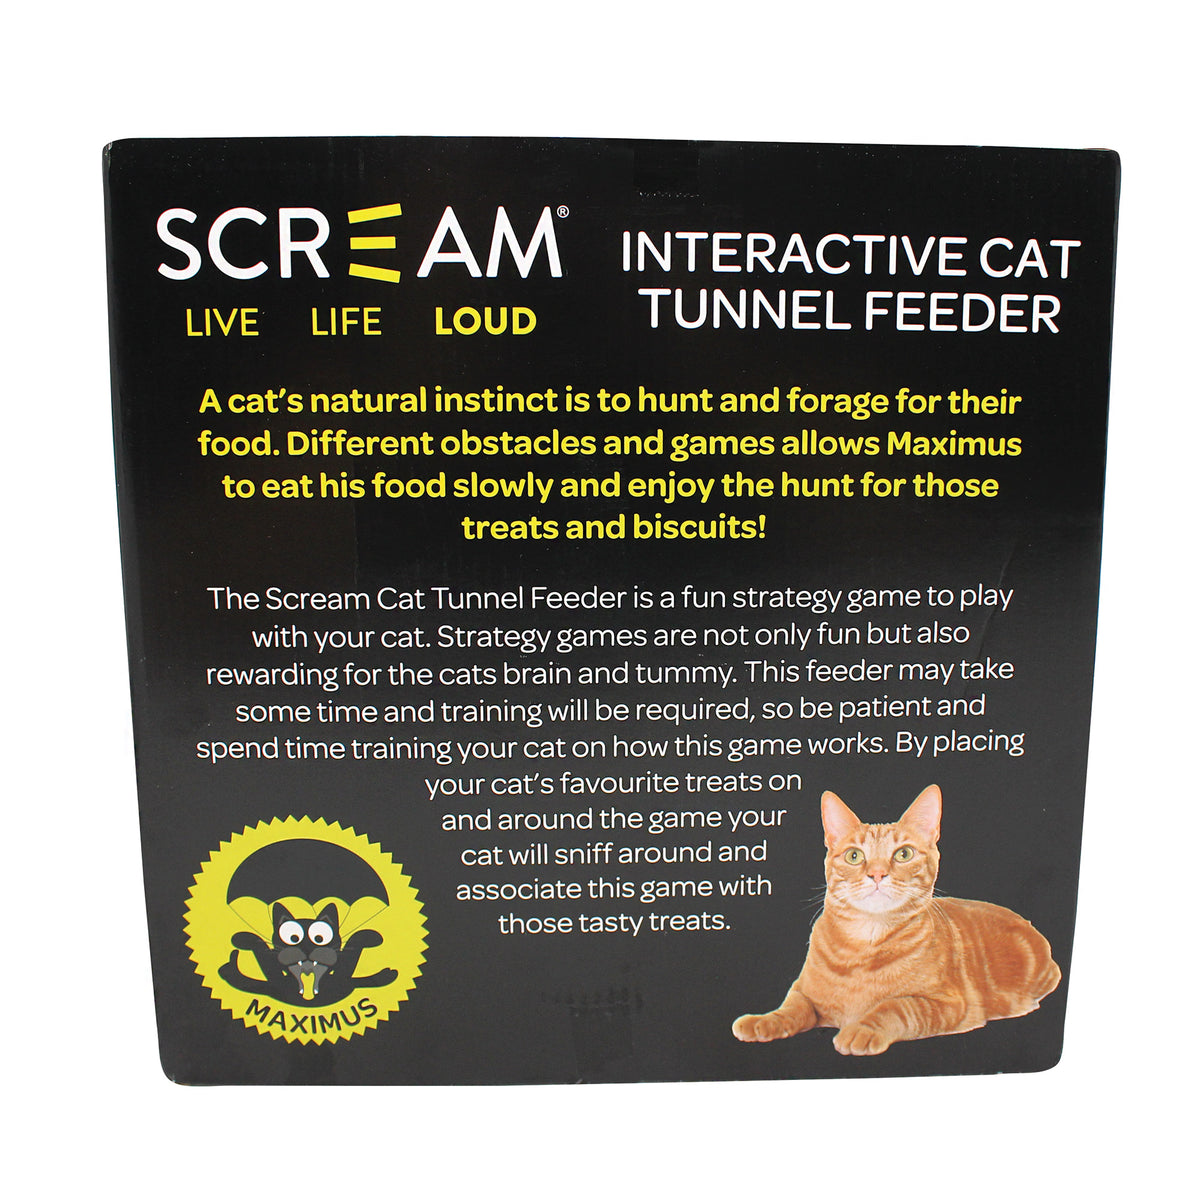 Scream Interactive Cat Tunnel Feeder